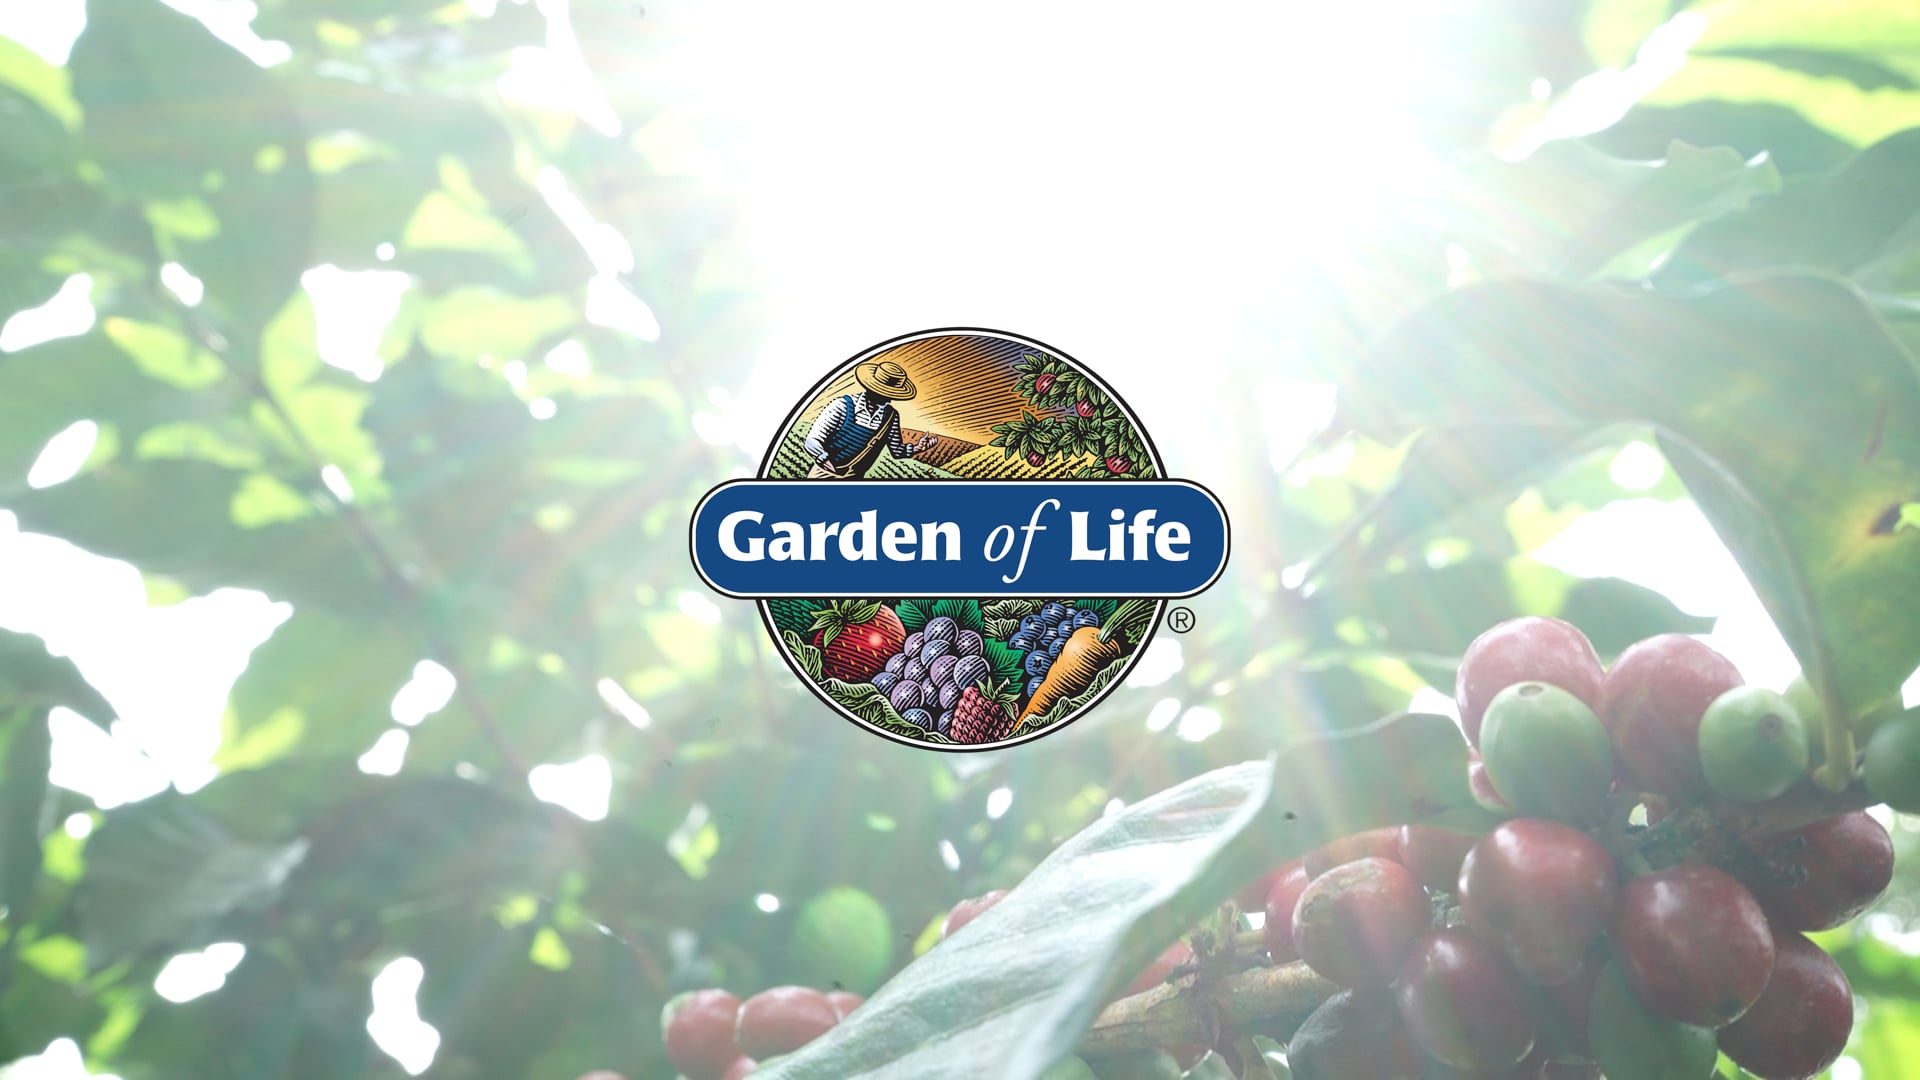 Garden of Life - Carbon Neutral